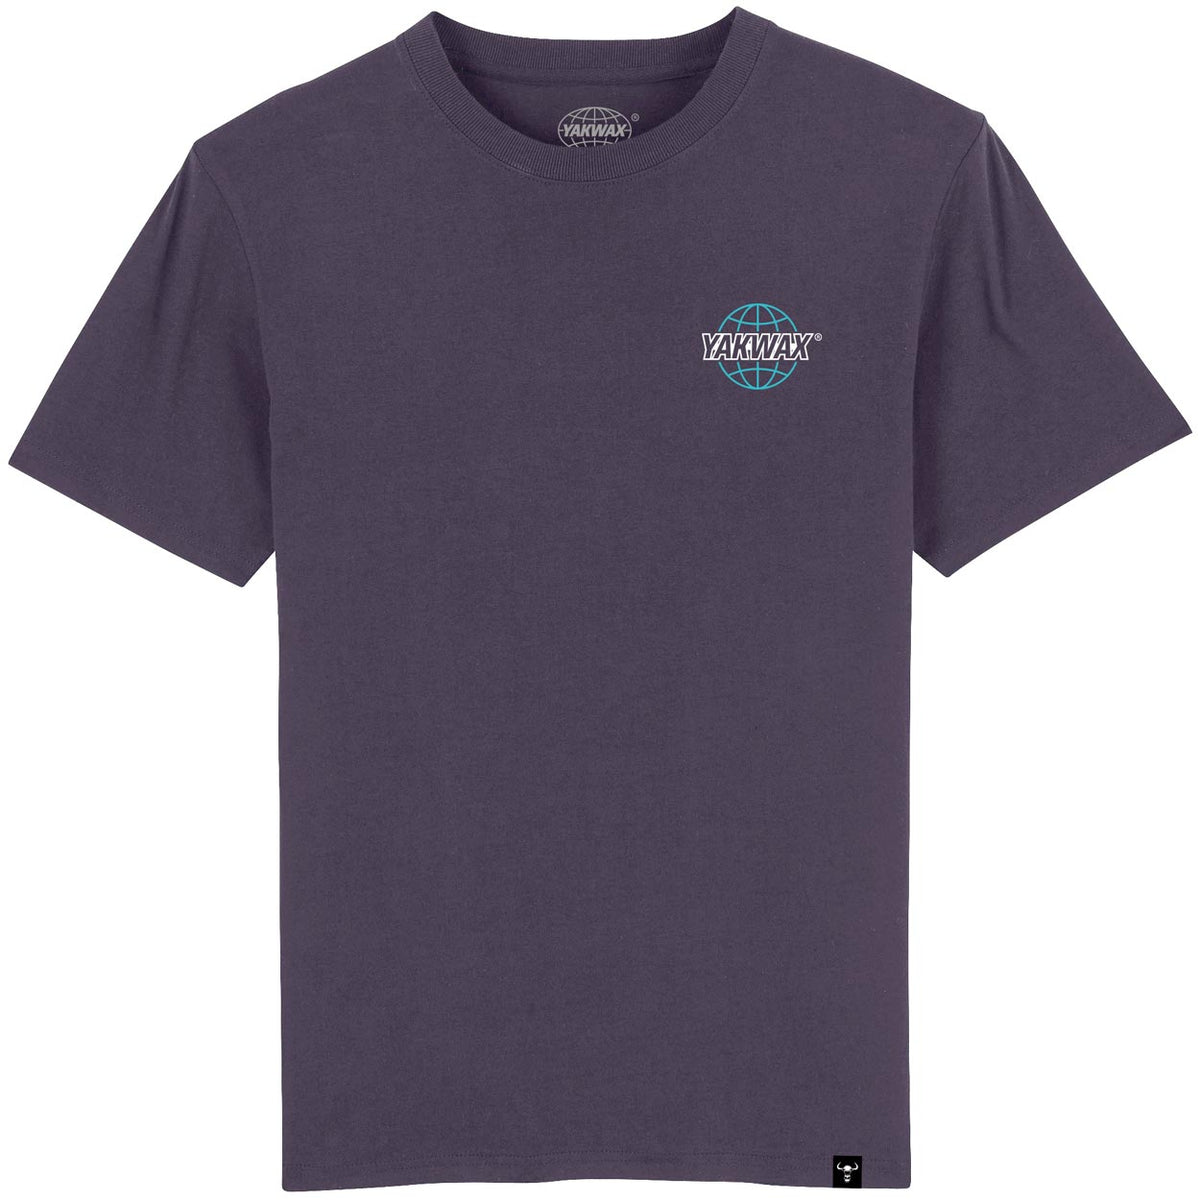 Yakwax Worldwide T-Shirt - Blackcurrant/Sky - Mens Graphic T-Shirt by Yakwax